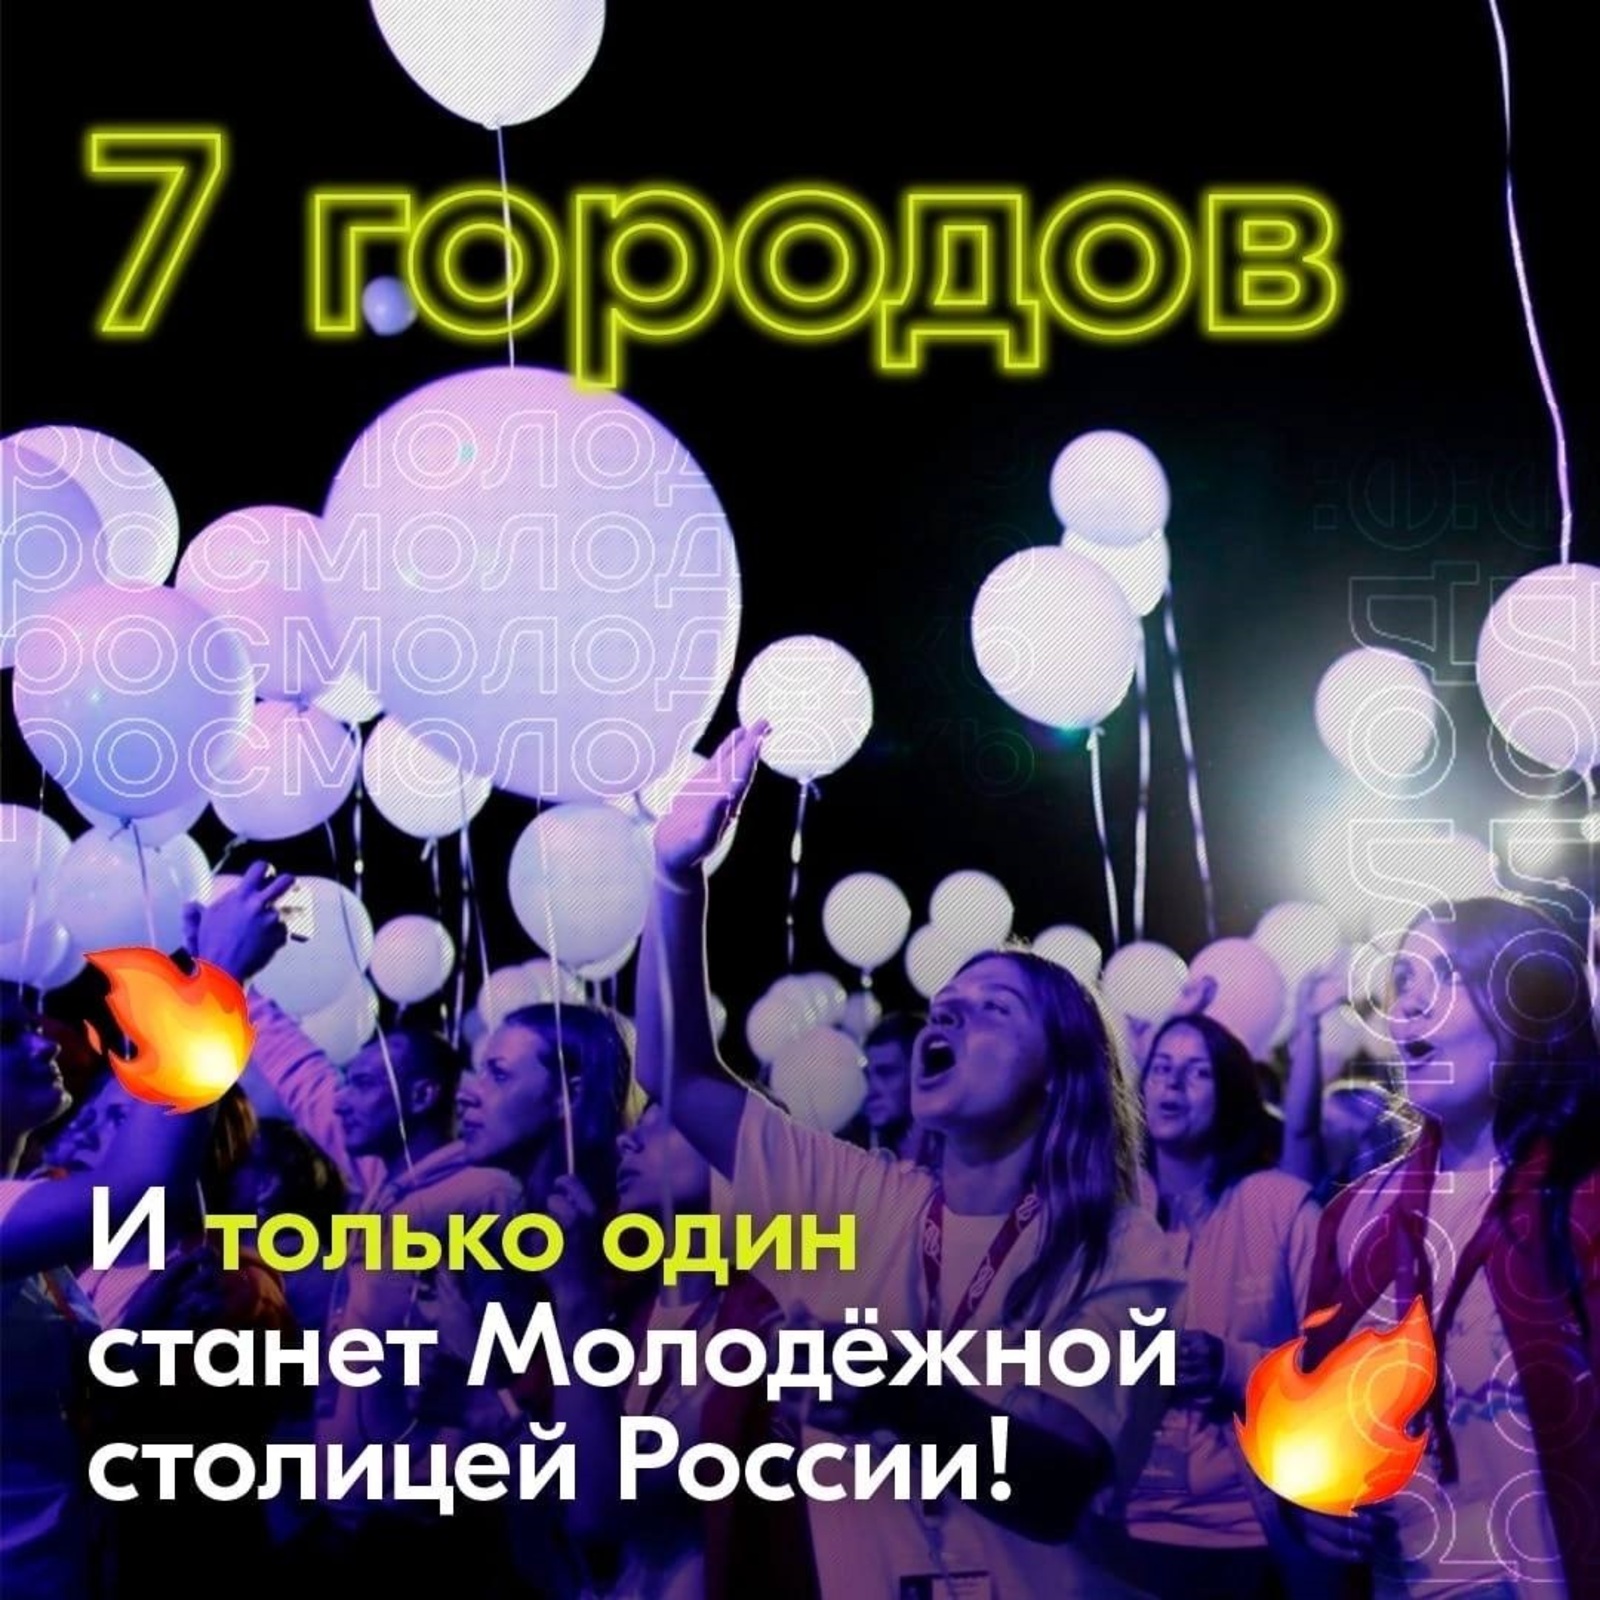 Нижний Новгород вошел в топ-7 претендентов на звание «Молодежной столицы России»